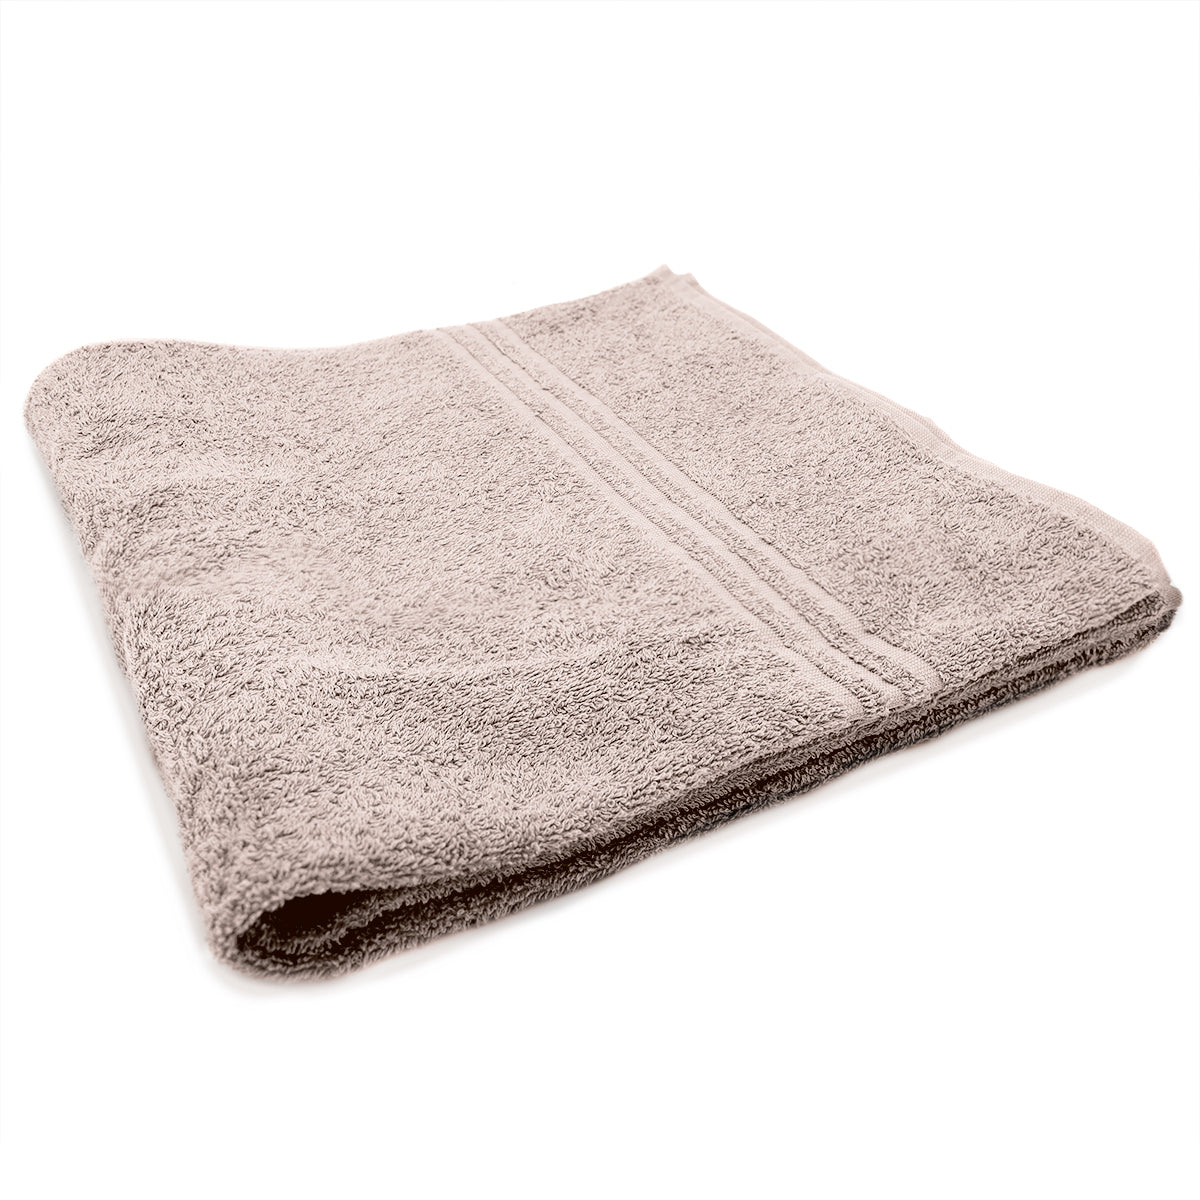 (10 stk.) Grønland badehåndklæde - 70 x 140 cm - taupe